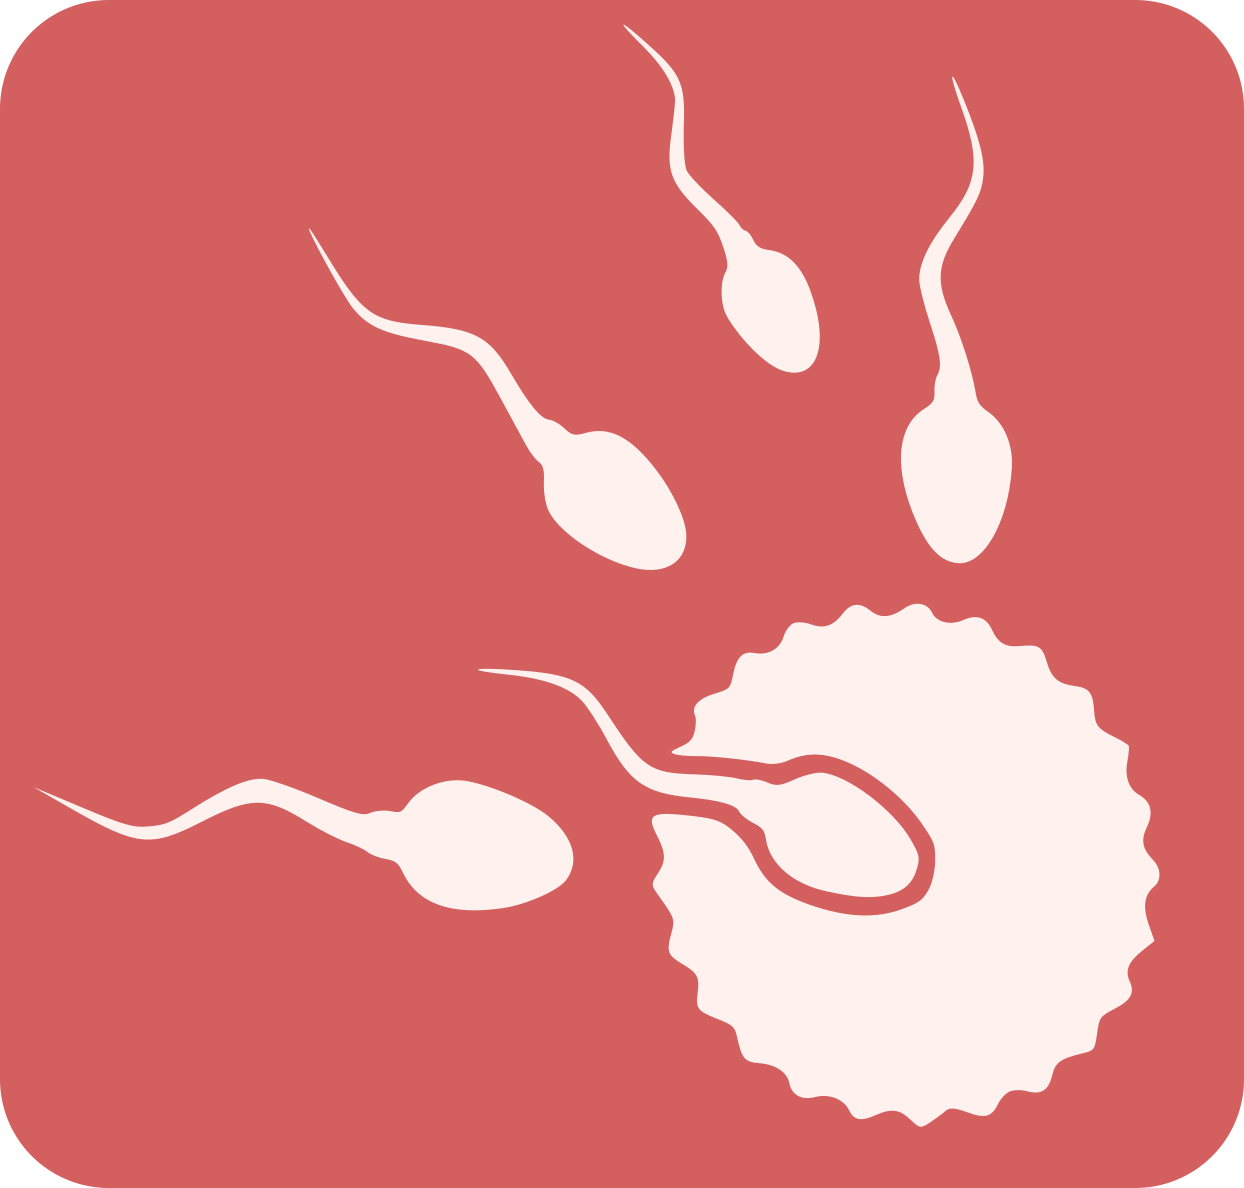 Imatge òvul fecundat per l'espermatozou